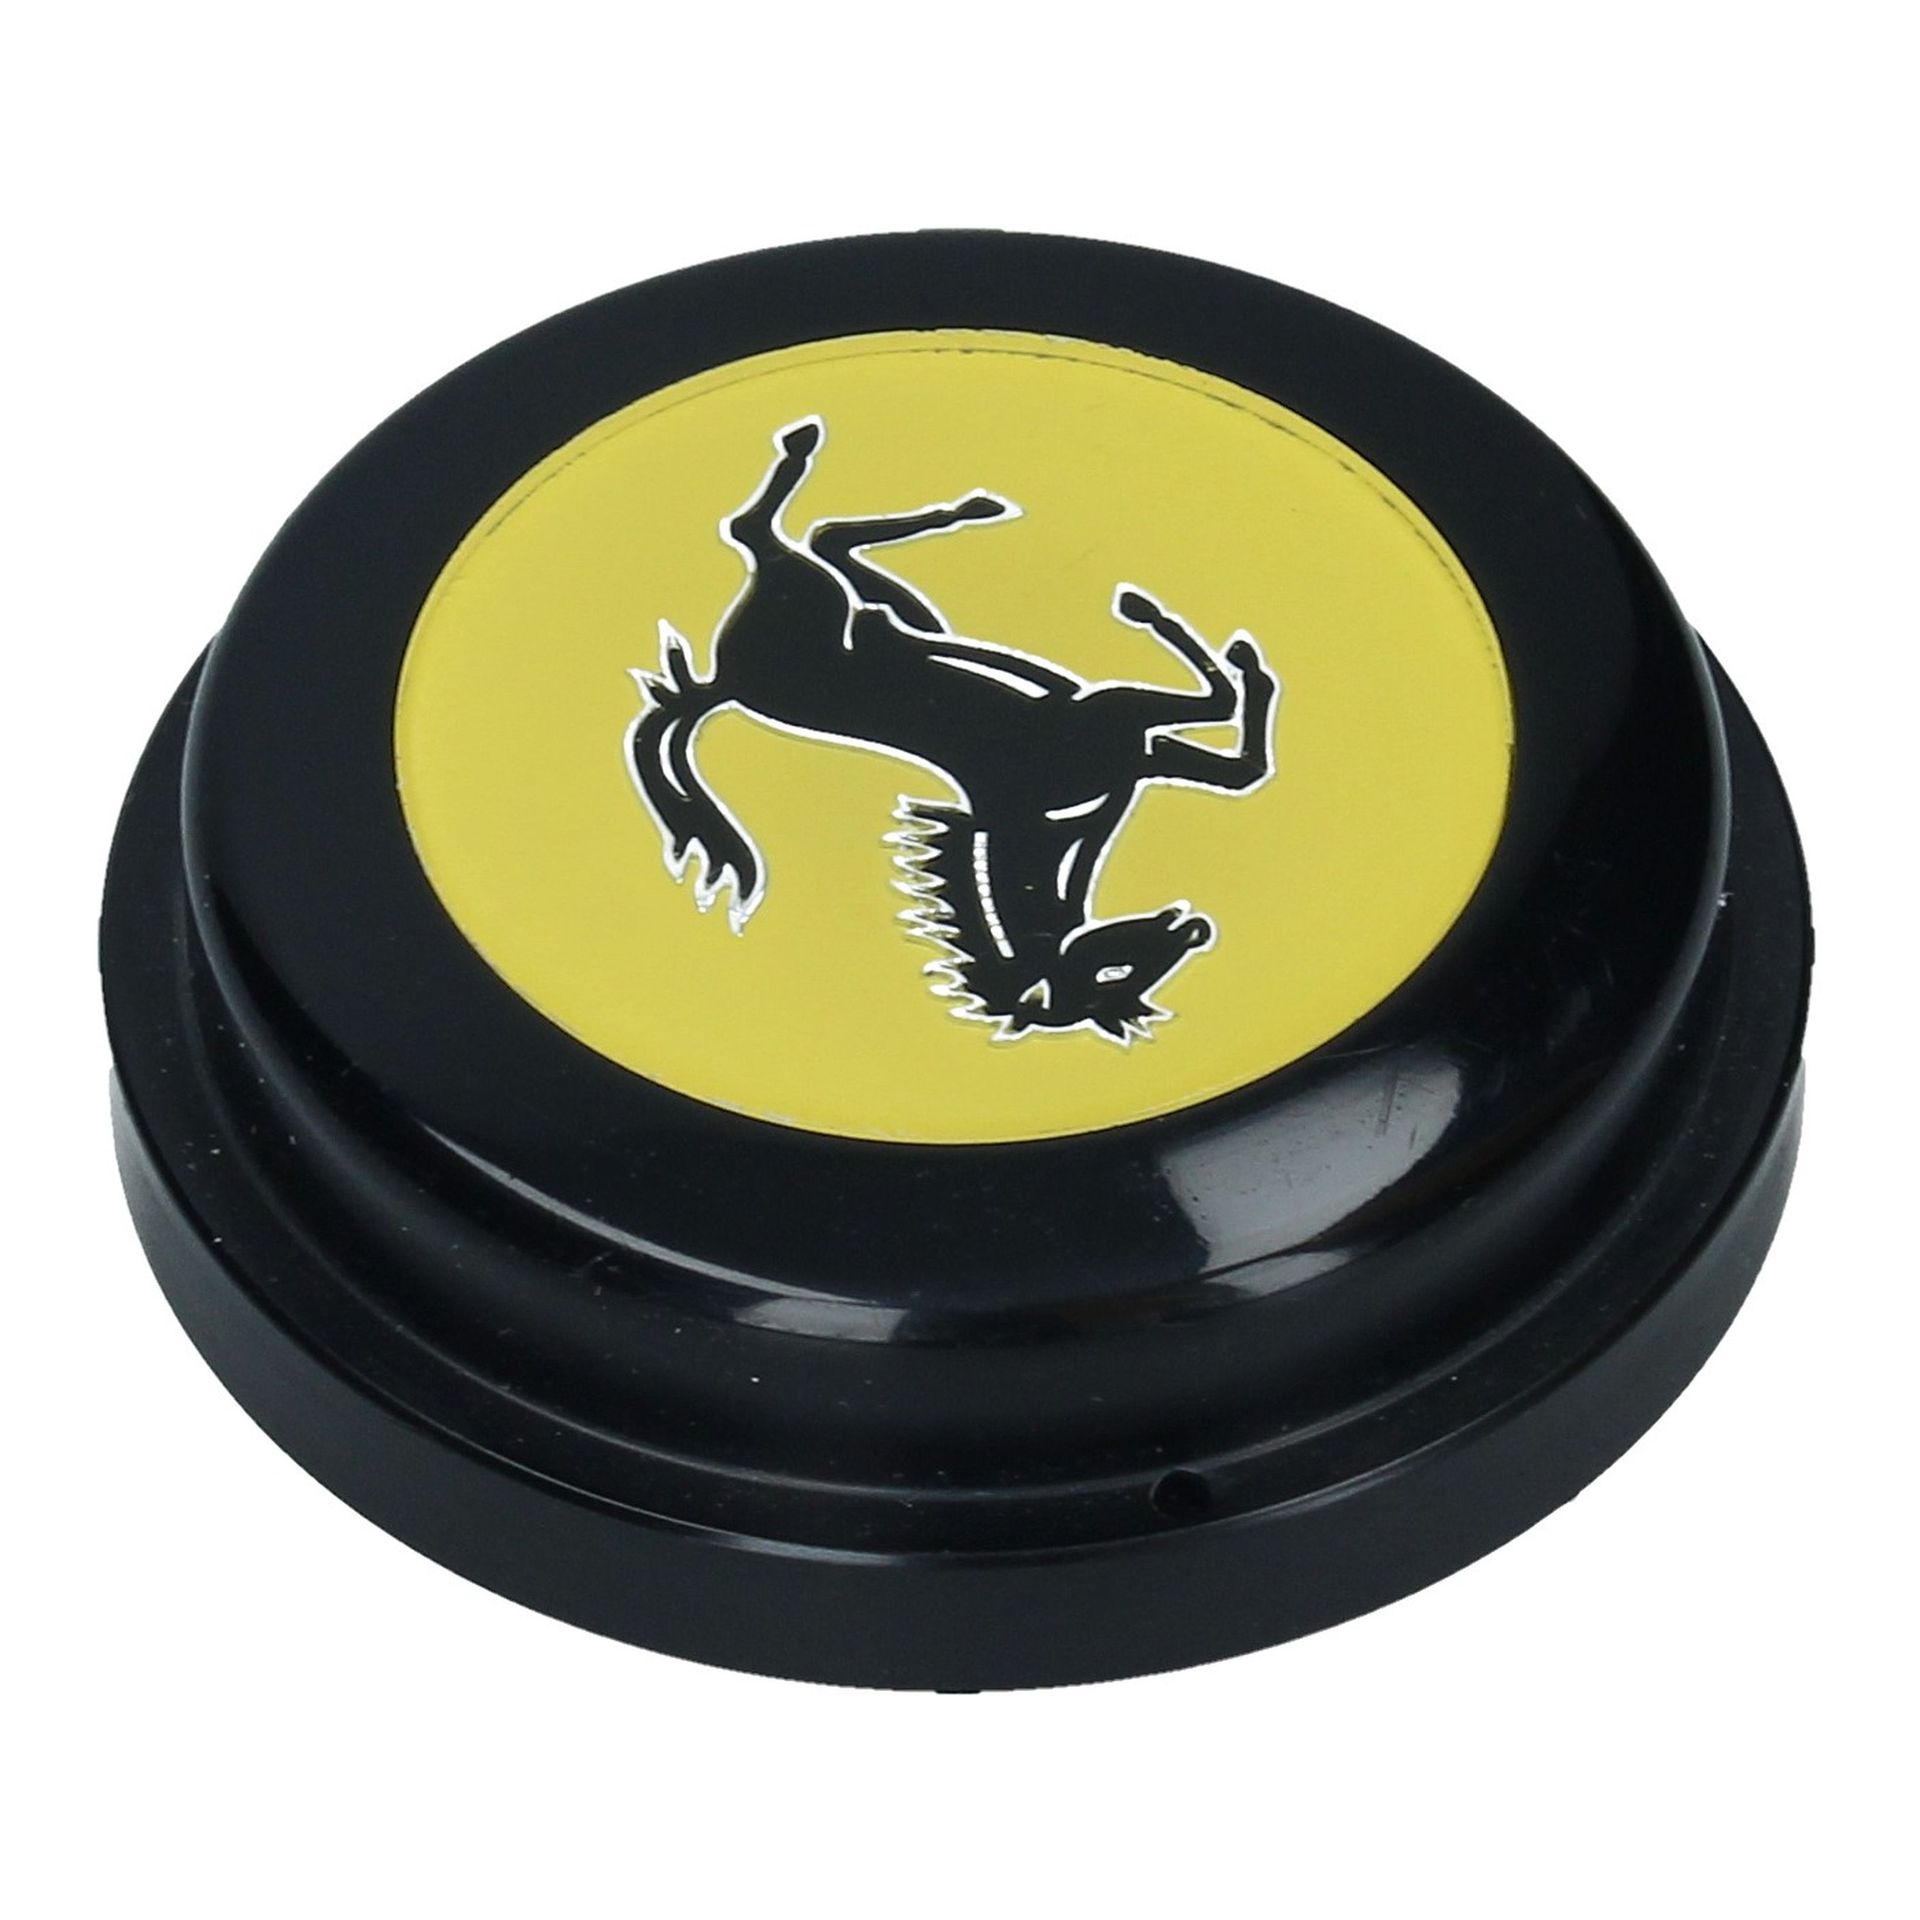 Horn Push Button